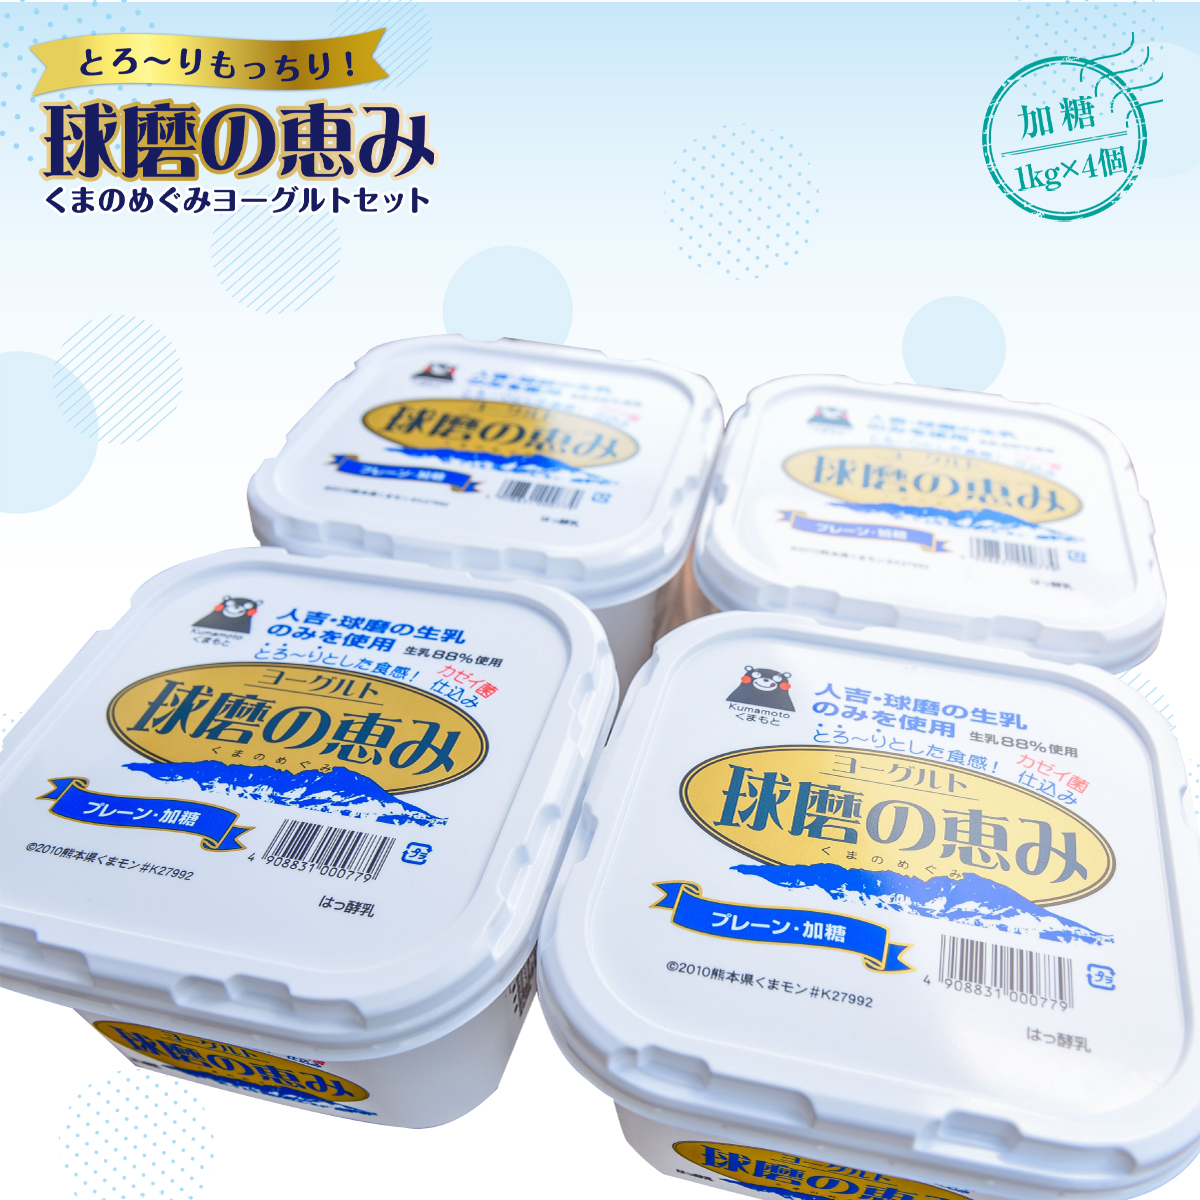 とろ～りともっちり感のある独特の食感が魅力のヨーグルトご堪能下さい 日本製 球磨の恵みヨーグルトセット 送料無料 ヨーグルト 乳製品 JZ002 健康 乳酸菌 加糖1kg×4個 免疫力 最大43%OFFクーポン